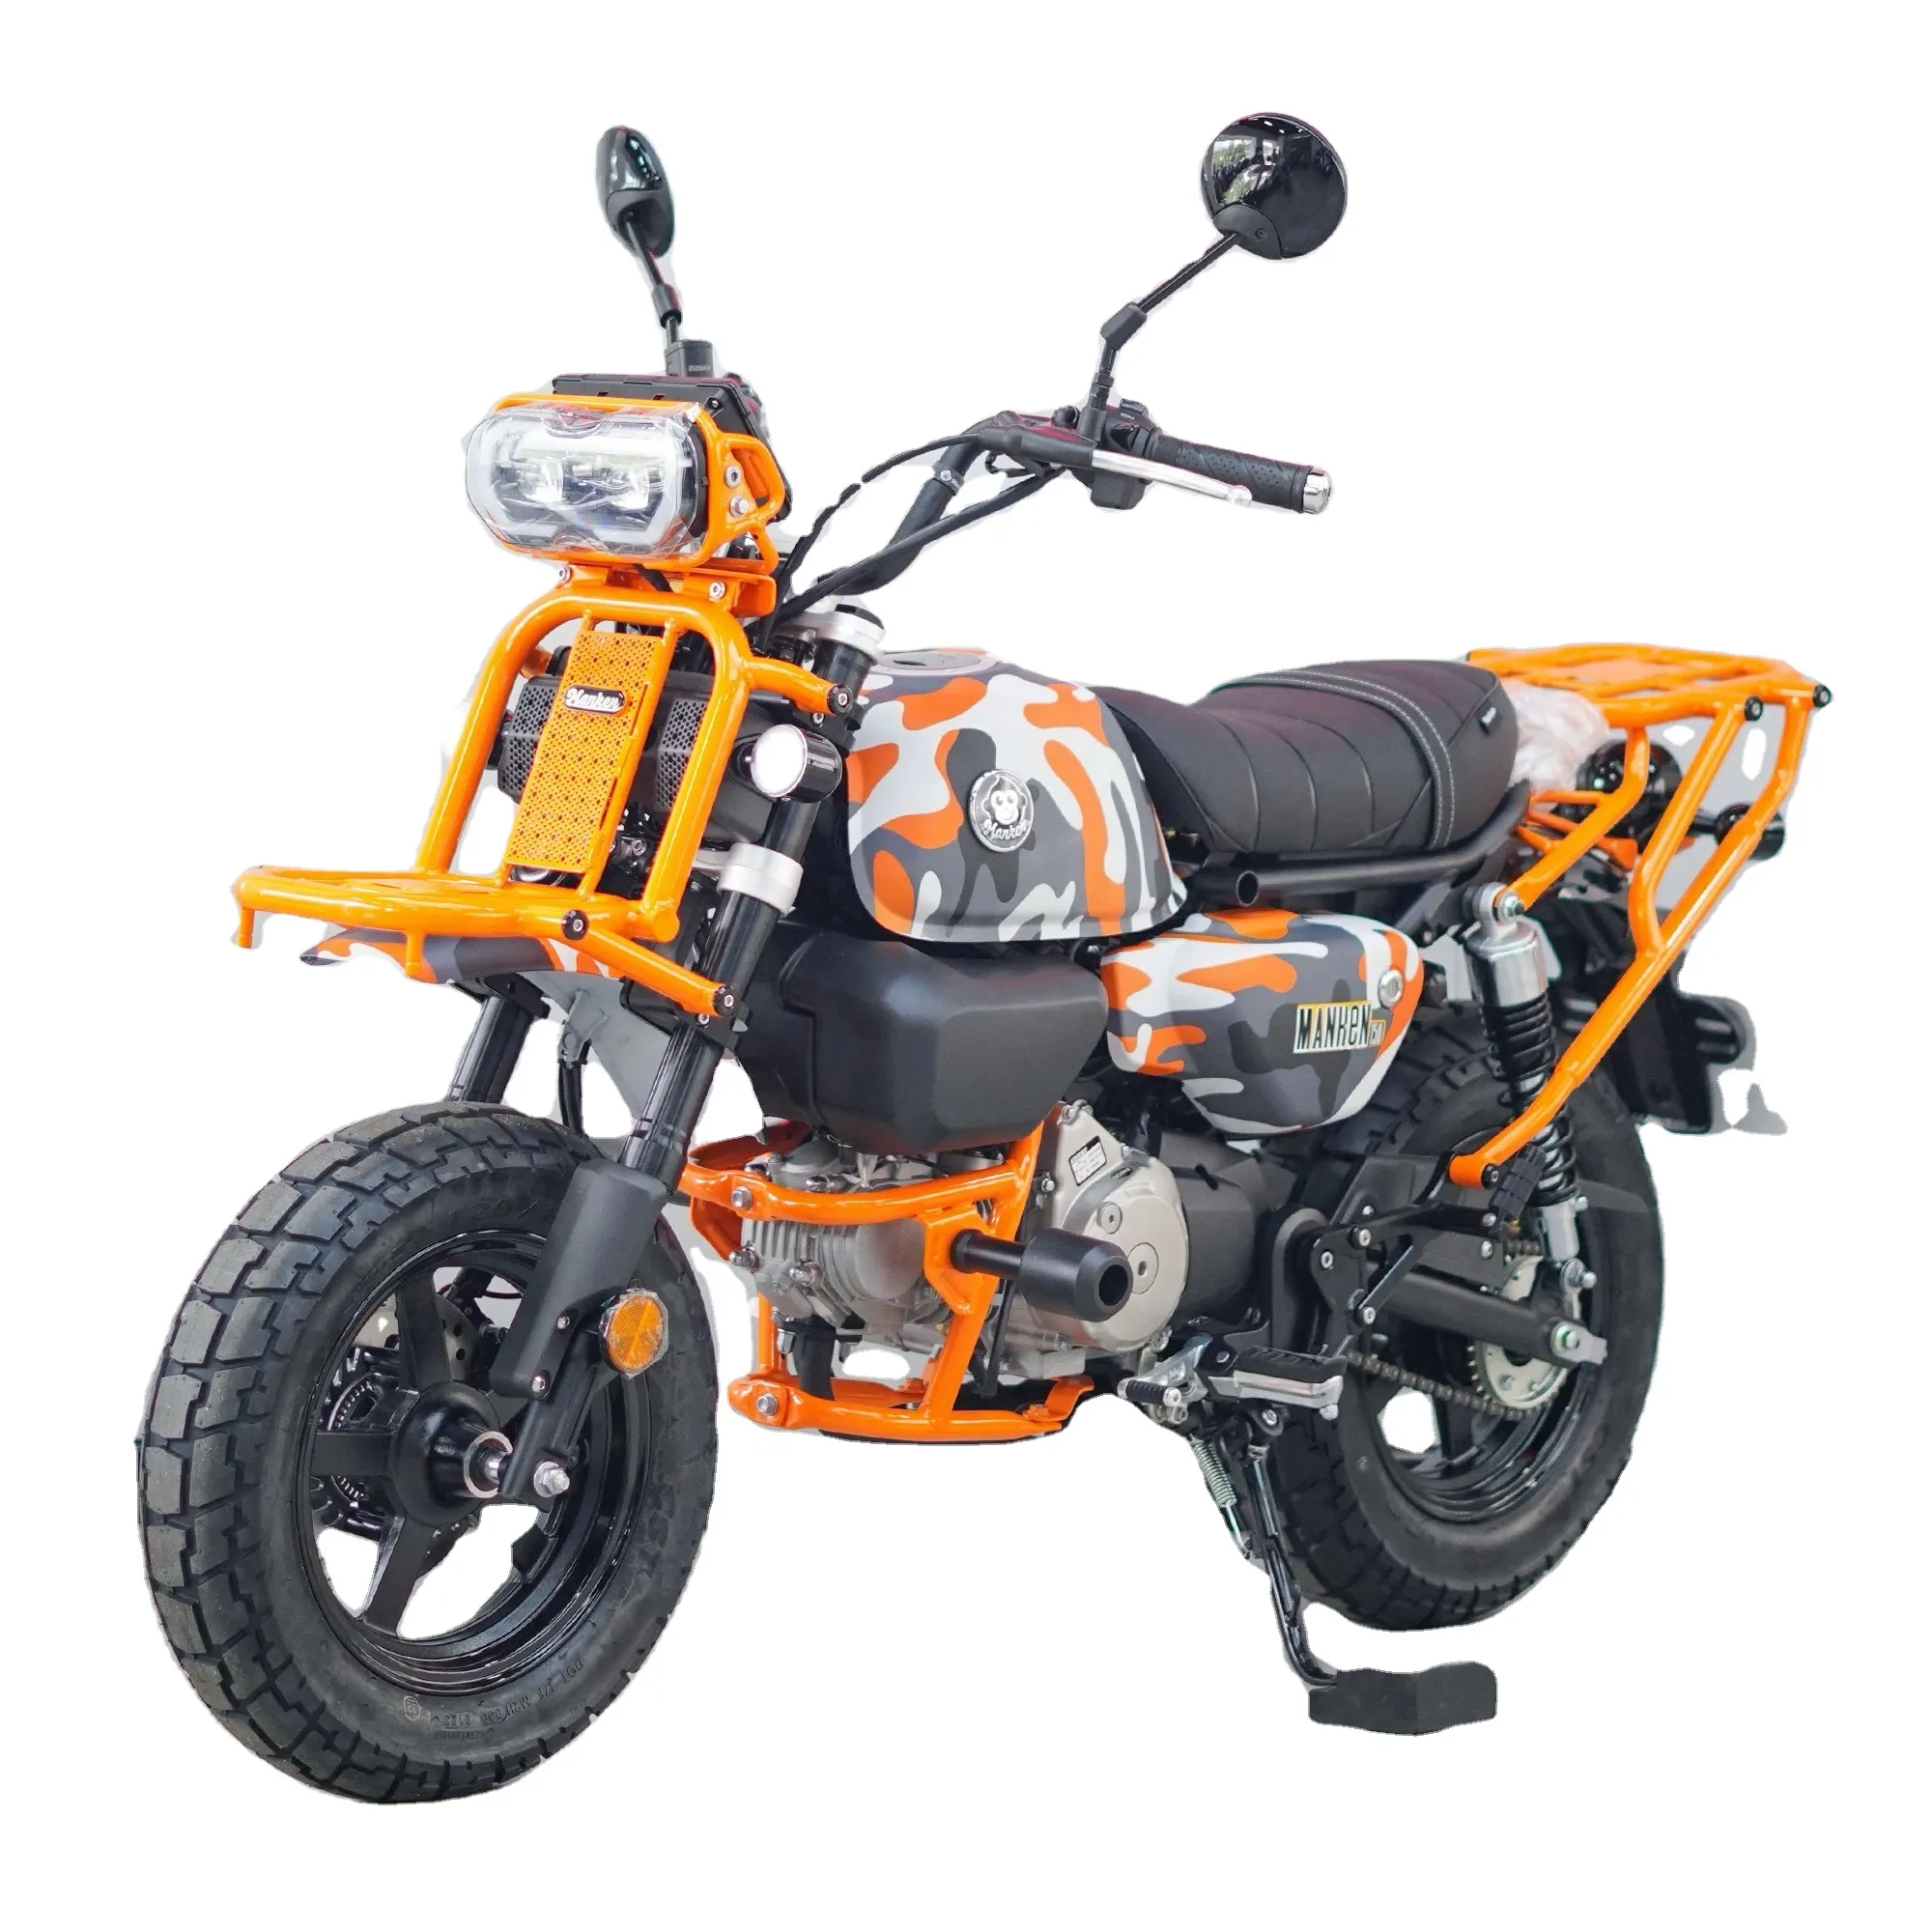 Thiết kế mới Dirt Bike manken mini xe máy xăng Scooter off-road 150cc ba bánh homologated